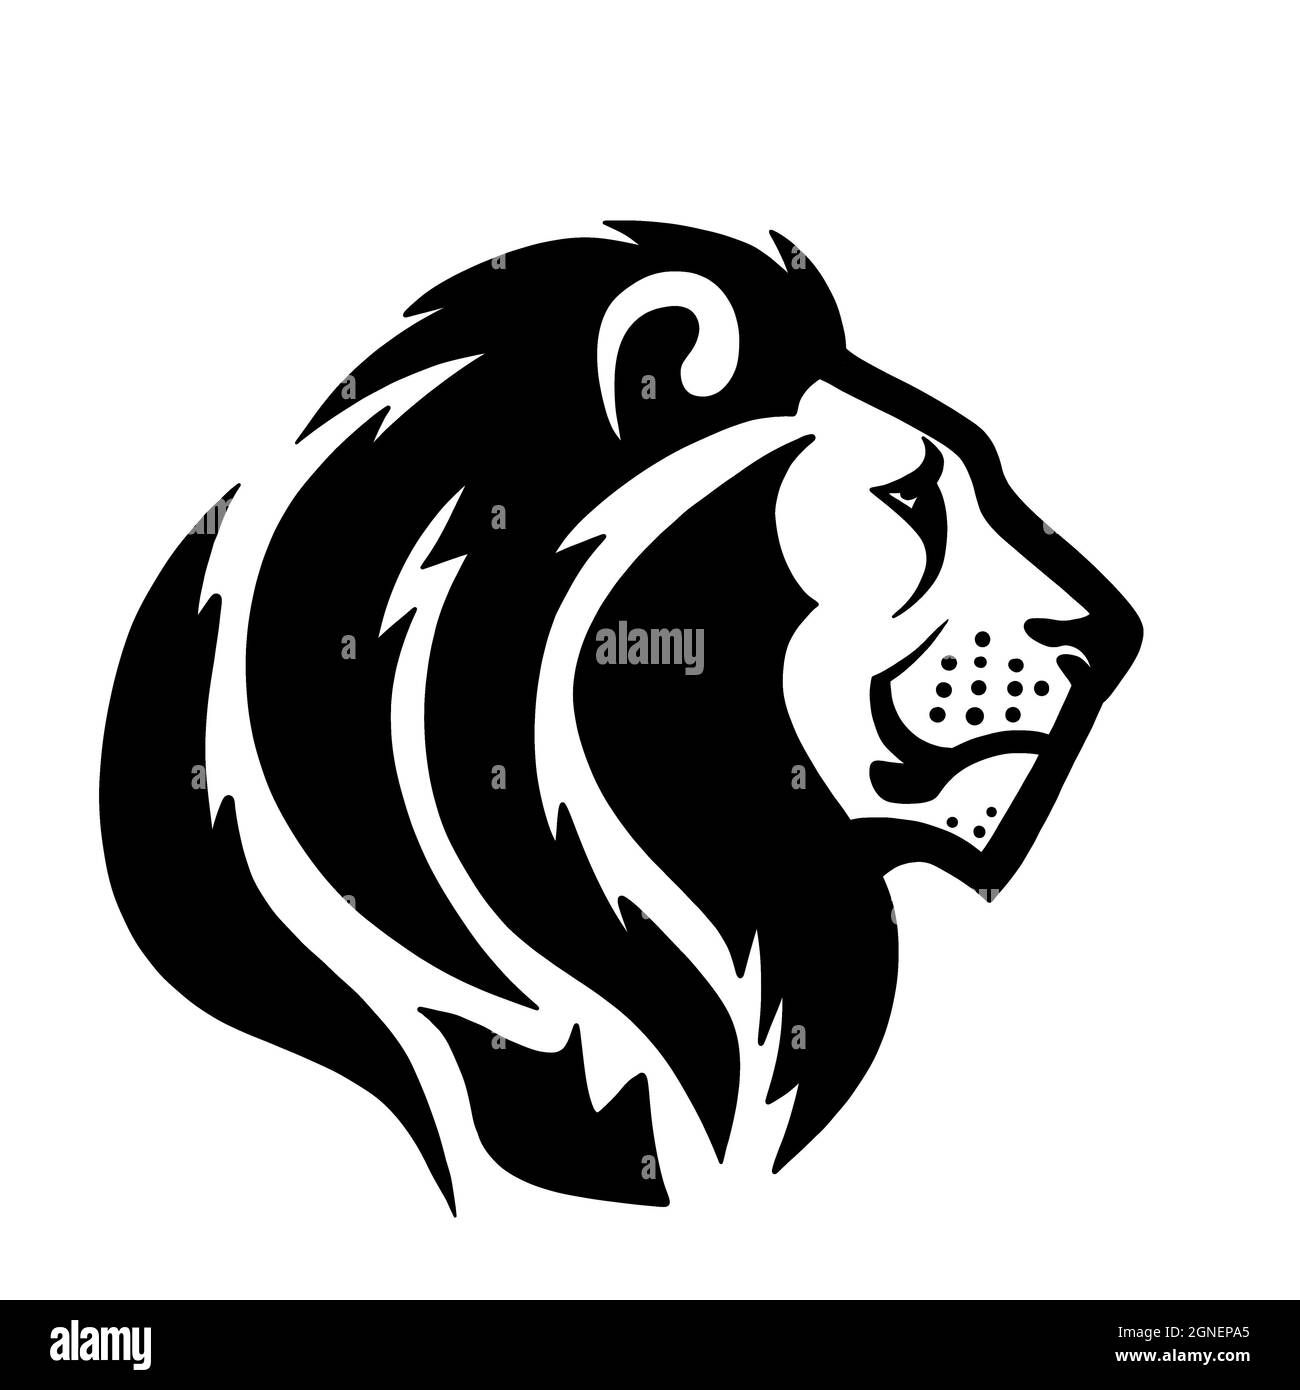 Un lion avec une bouche cisaillée. Le roi de la jungle. Un parent du tigre, panthère, léopard, couguar, guépard et chat domestique Banque D'Images